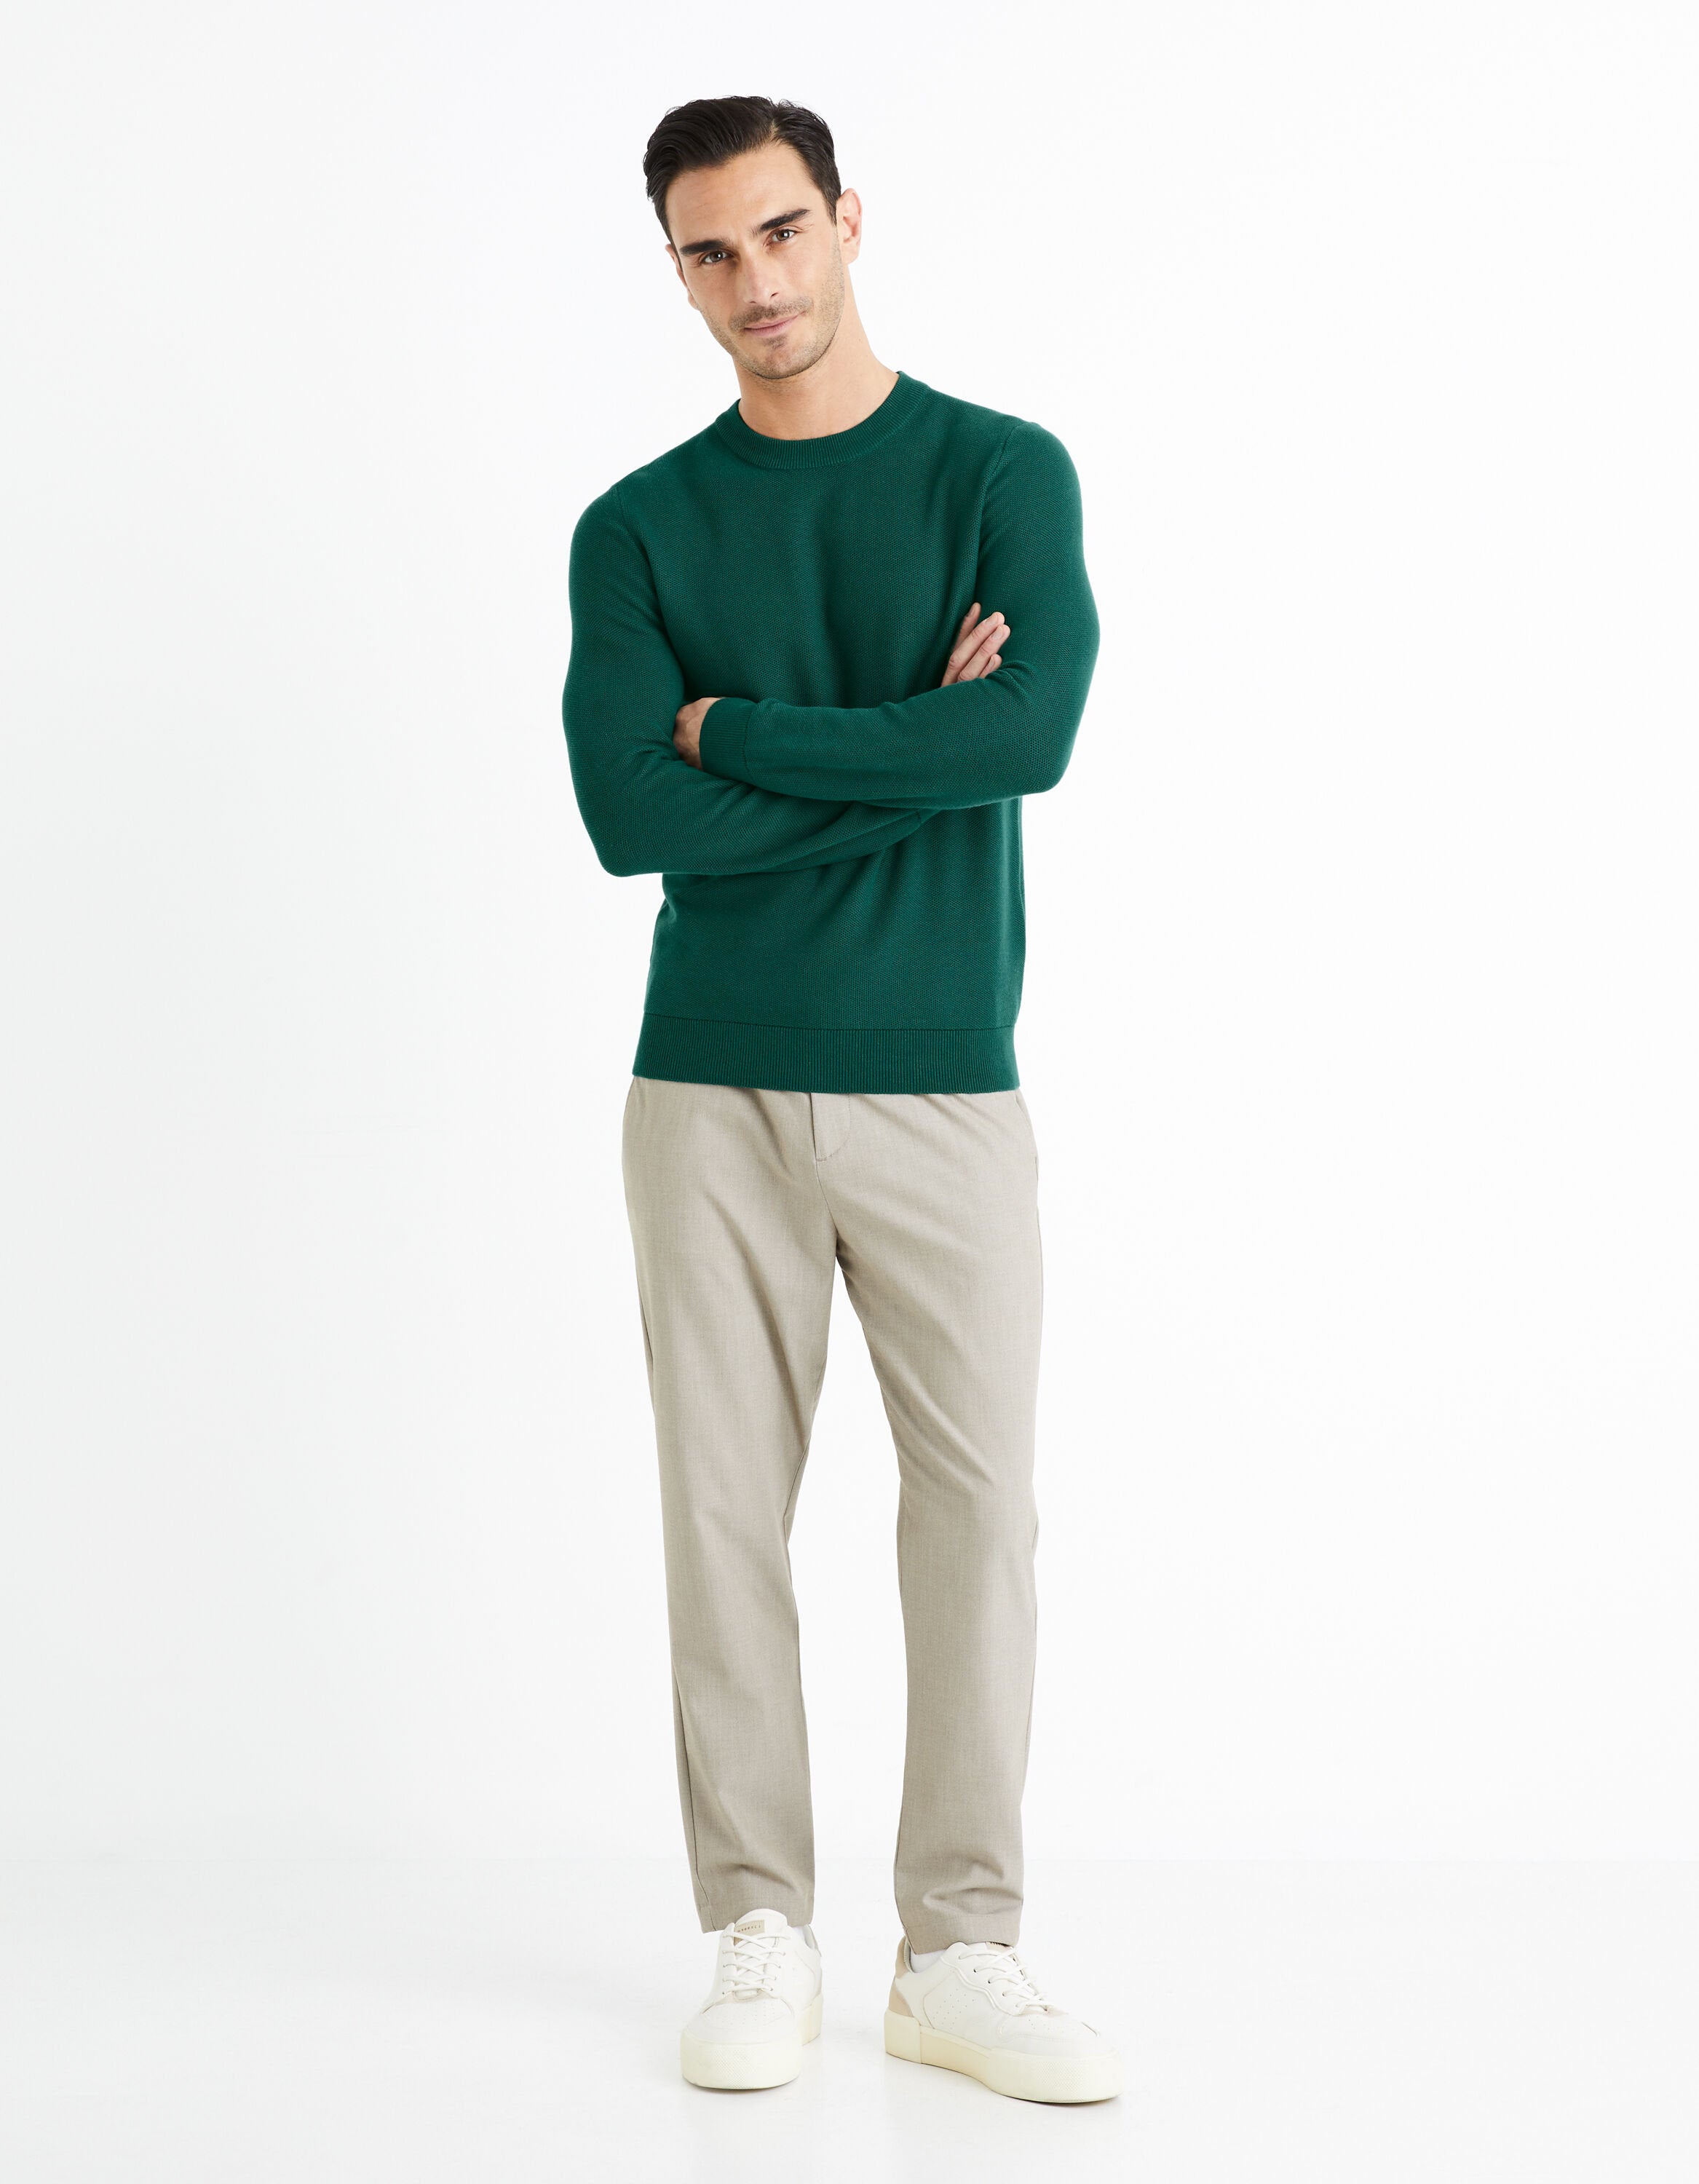 100% Cotton Round Neck Sweater - Green_BEPIC_DARK GREEN_03